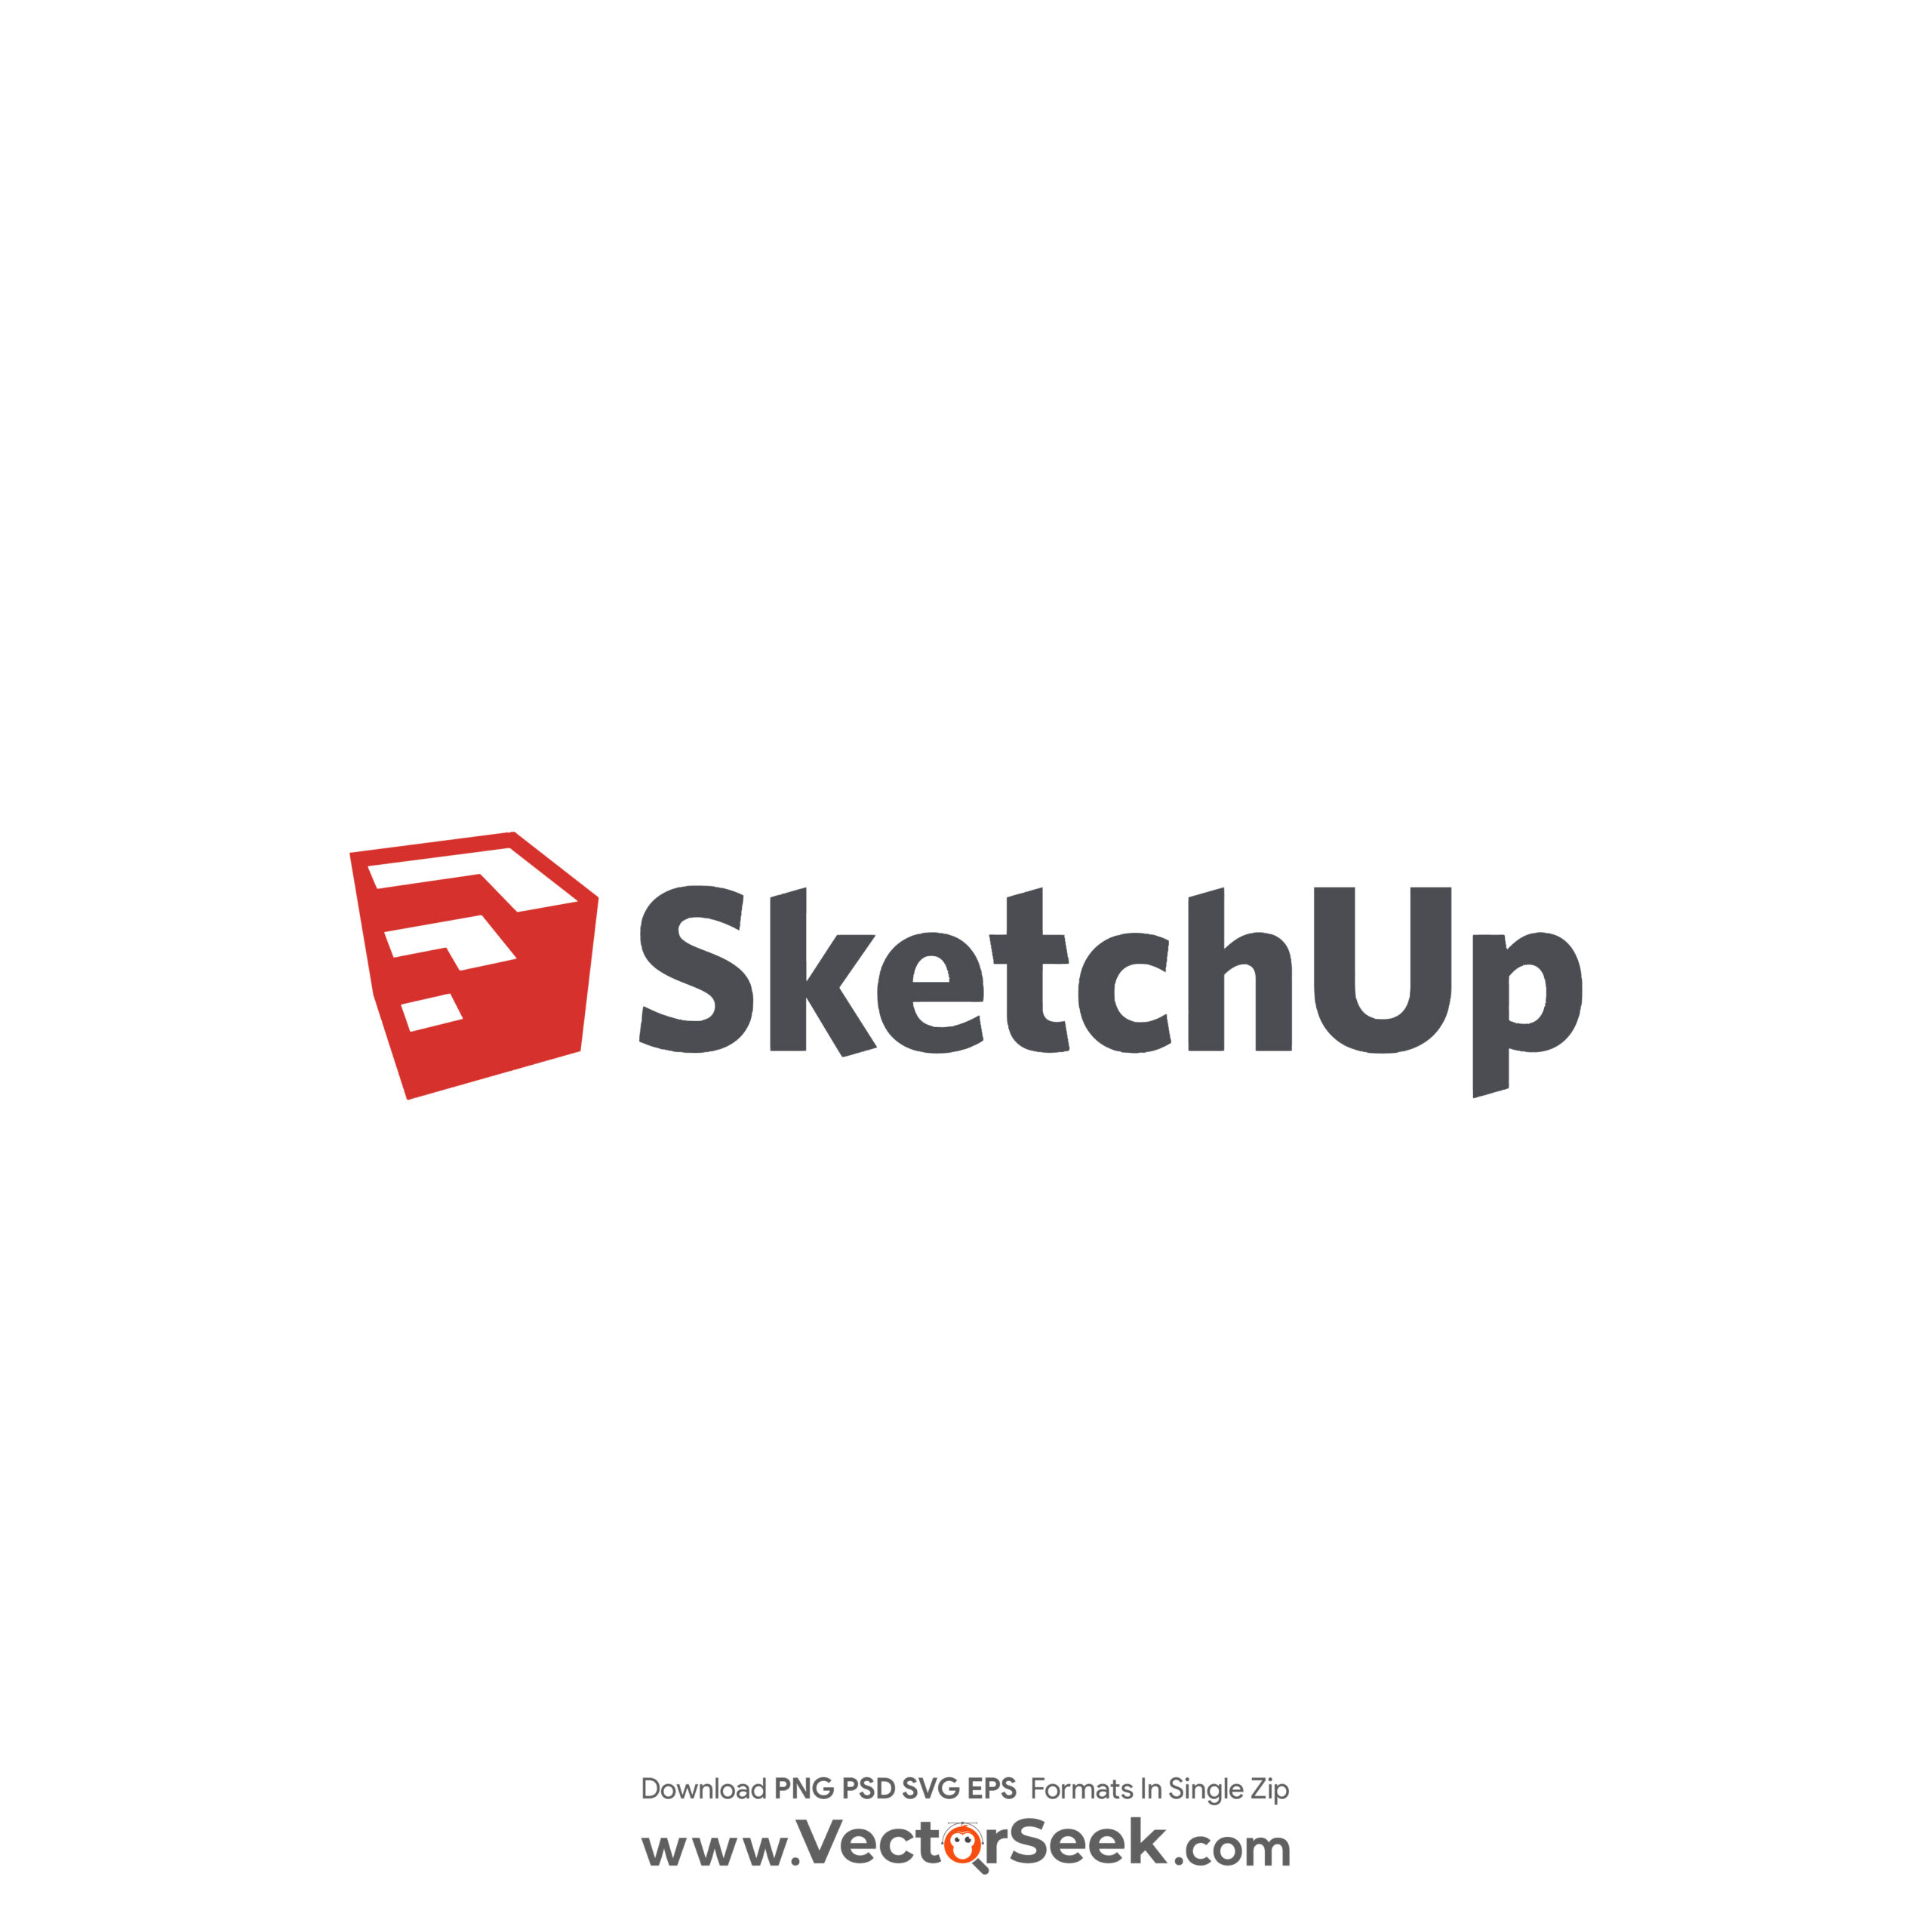 SketchUp Logo Vector